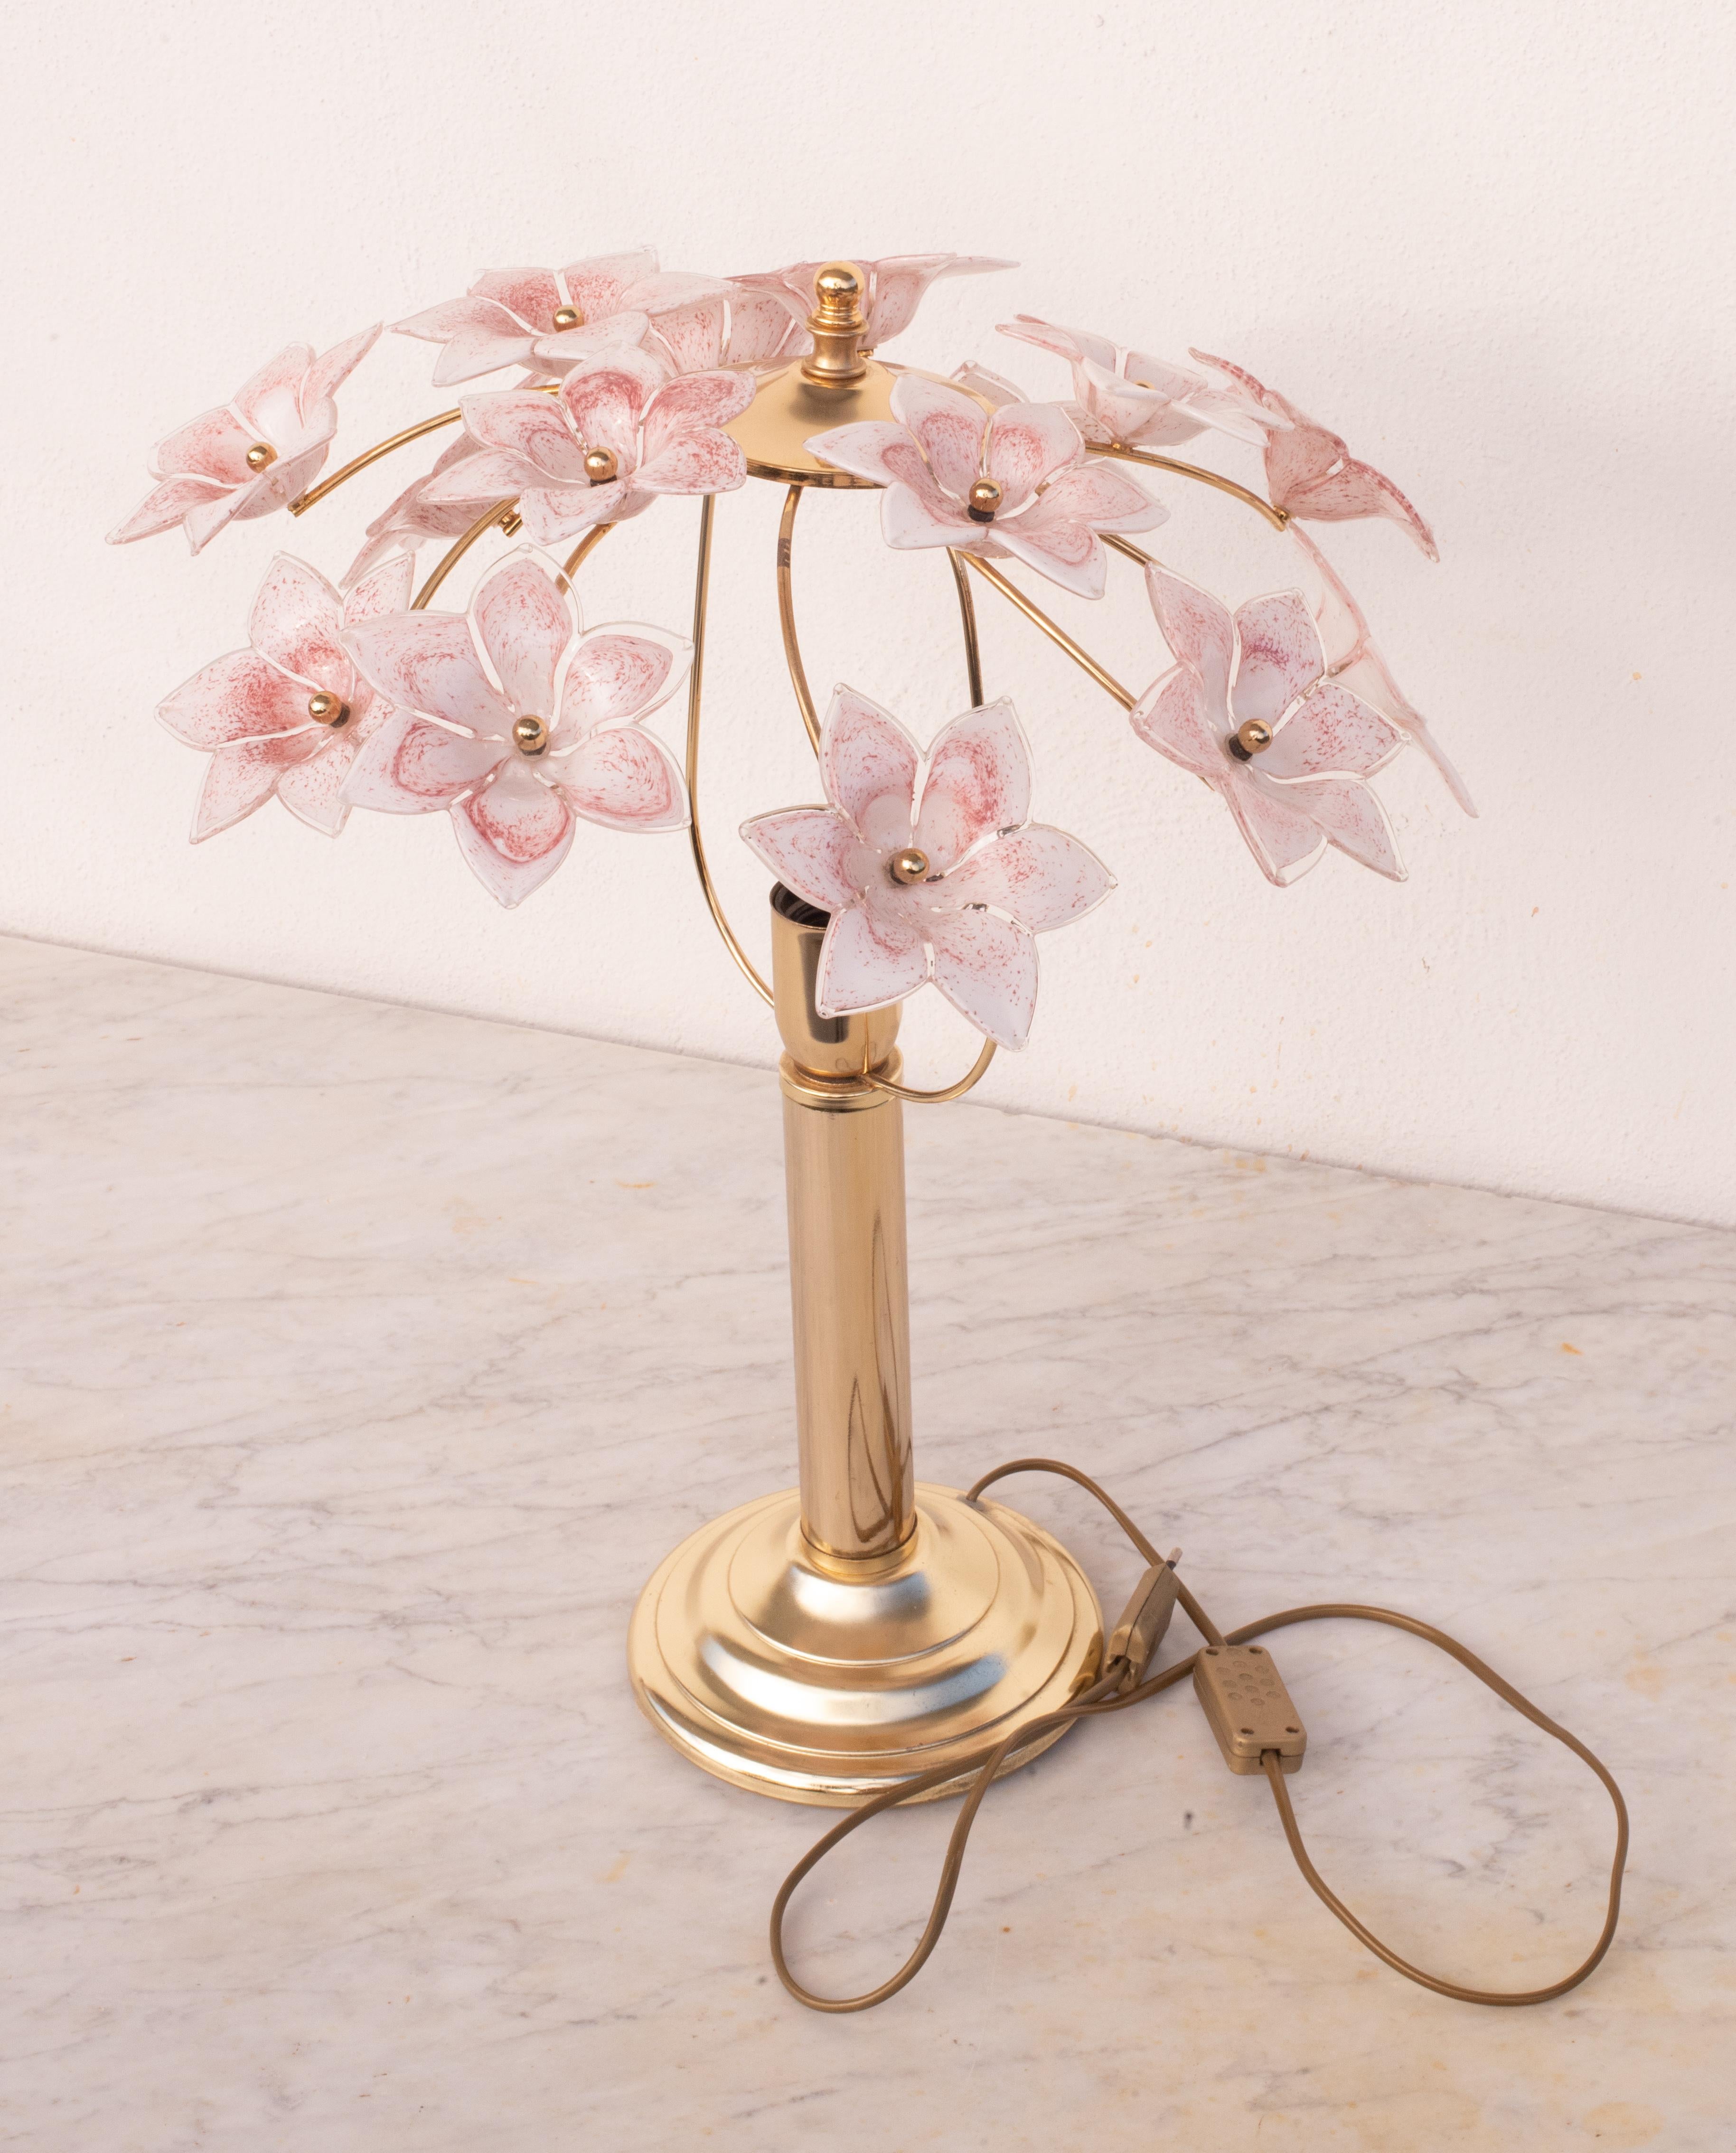 Jolie lampe de table avec des fleurs roses en verre de Murano.
Convient pour une ampoule à vis E27, normes européennes, possibilité de remplacement par des normes américaines.
Mesures :
56 cm de largeur
Hauteur 56 cm
Excellent état vintage.